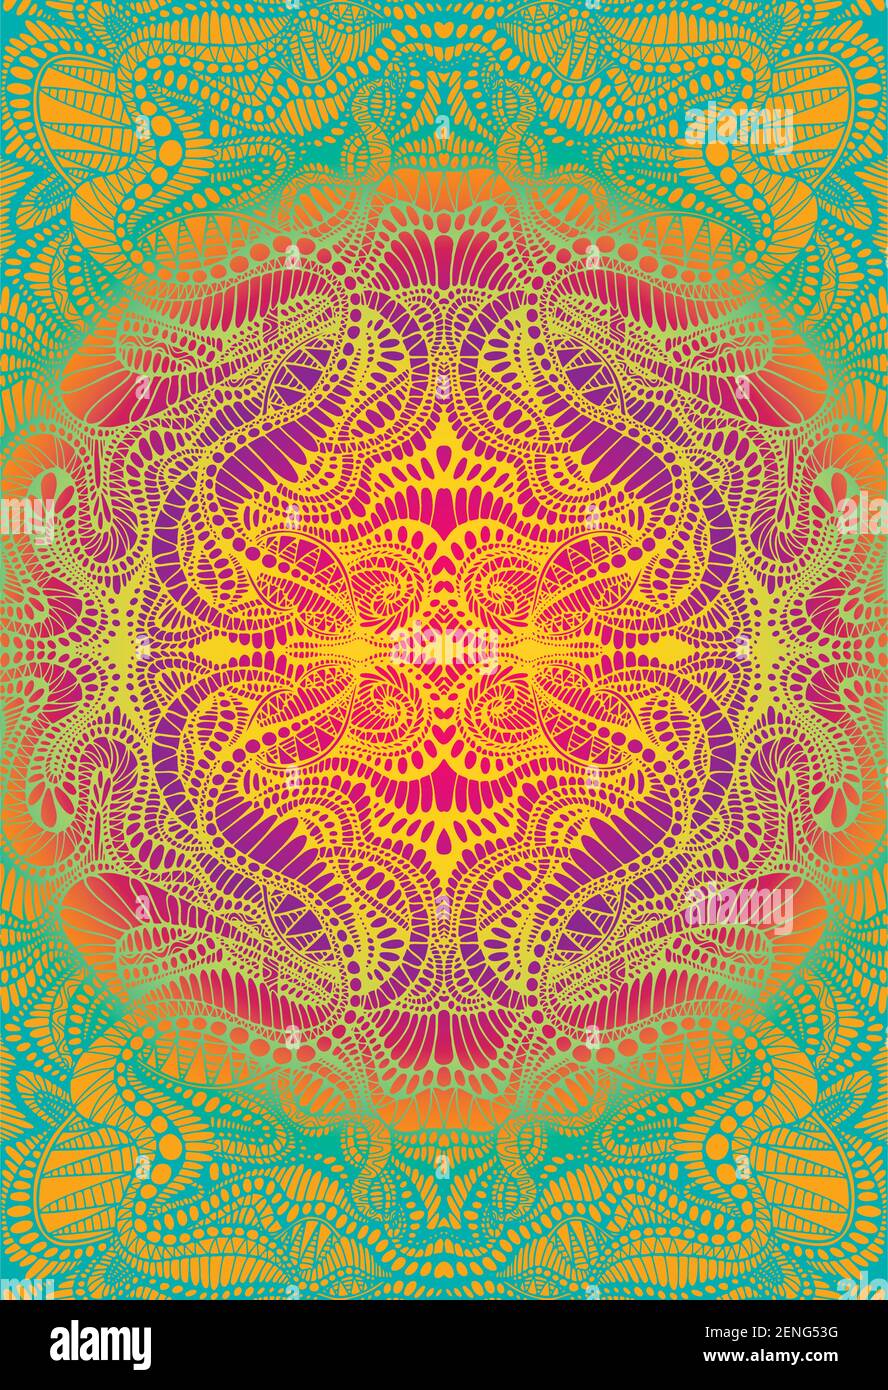 Psychedelische tripy bunte Fraktal Mandala, Farbverlauf helle Farbe Umriss,  auf lebendige Farbverlauf Farben Hintergrund. Dekoratives Element  Blumenmuster Stock-Vektorgrafik - Alamy